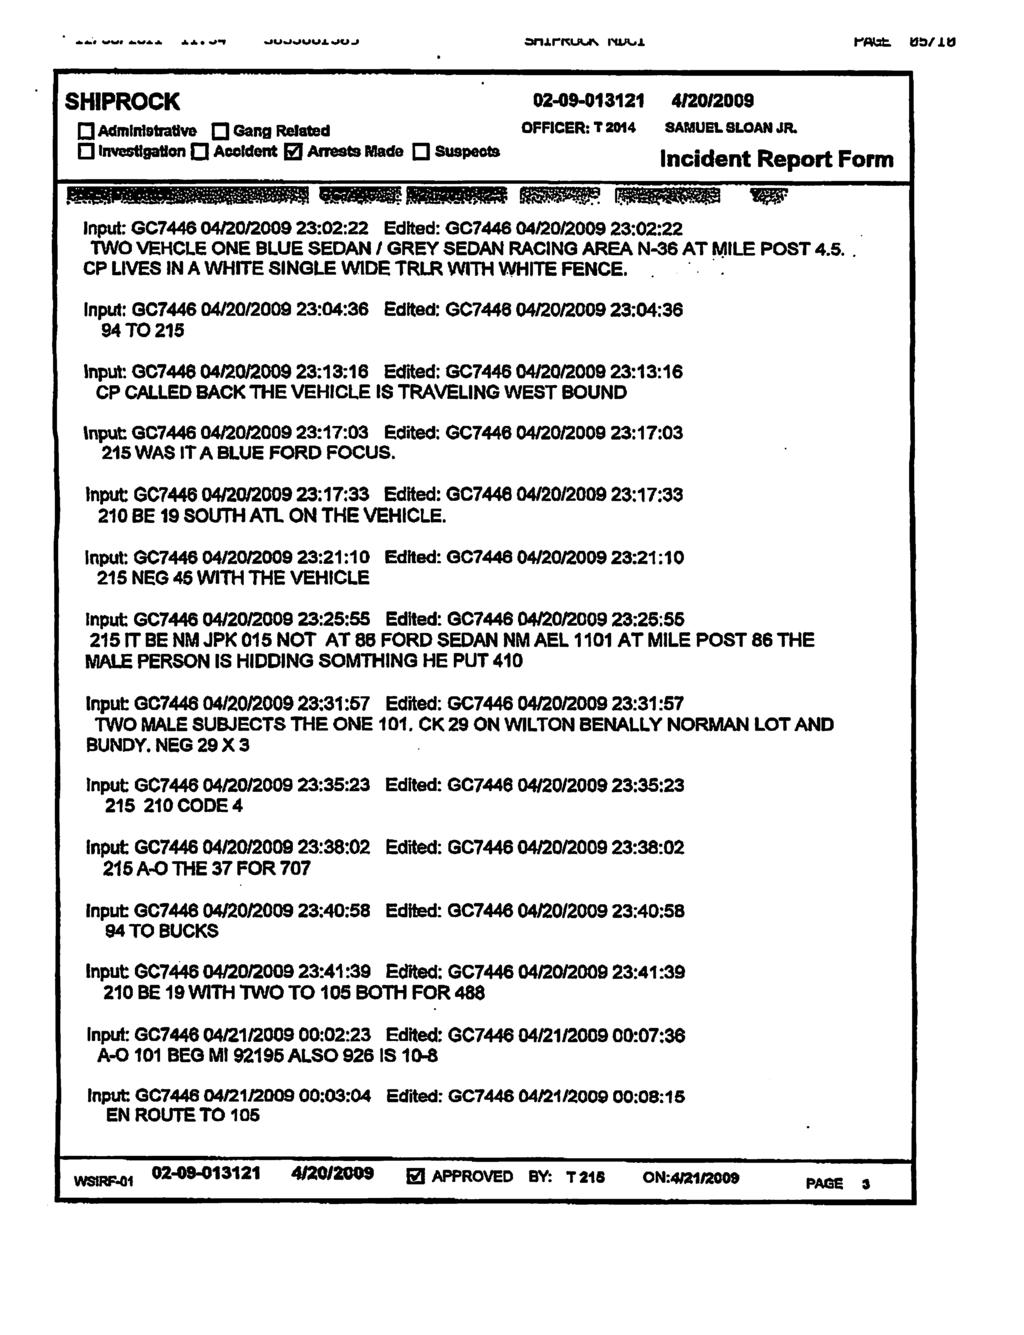 Case 1:11-cr-02432-KBM Document